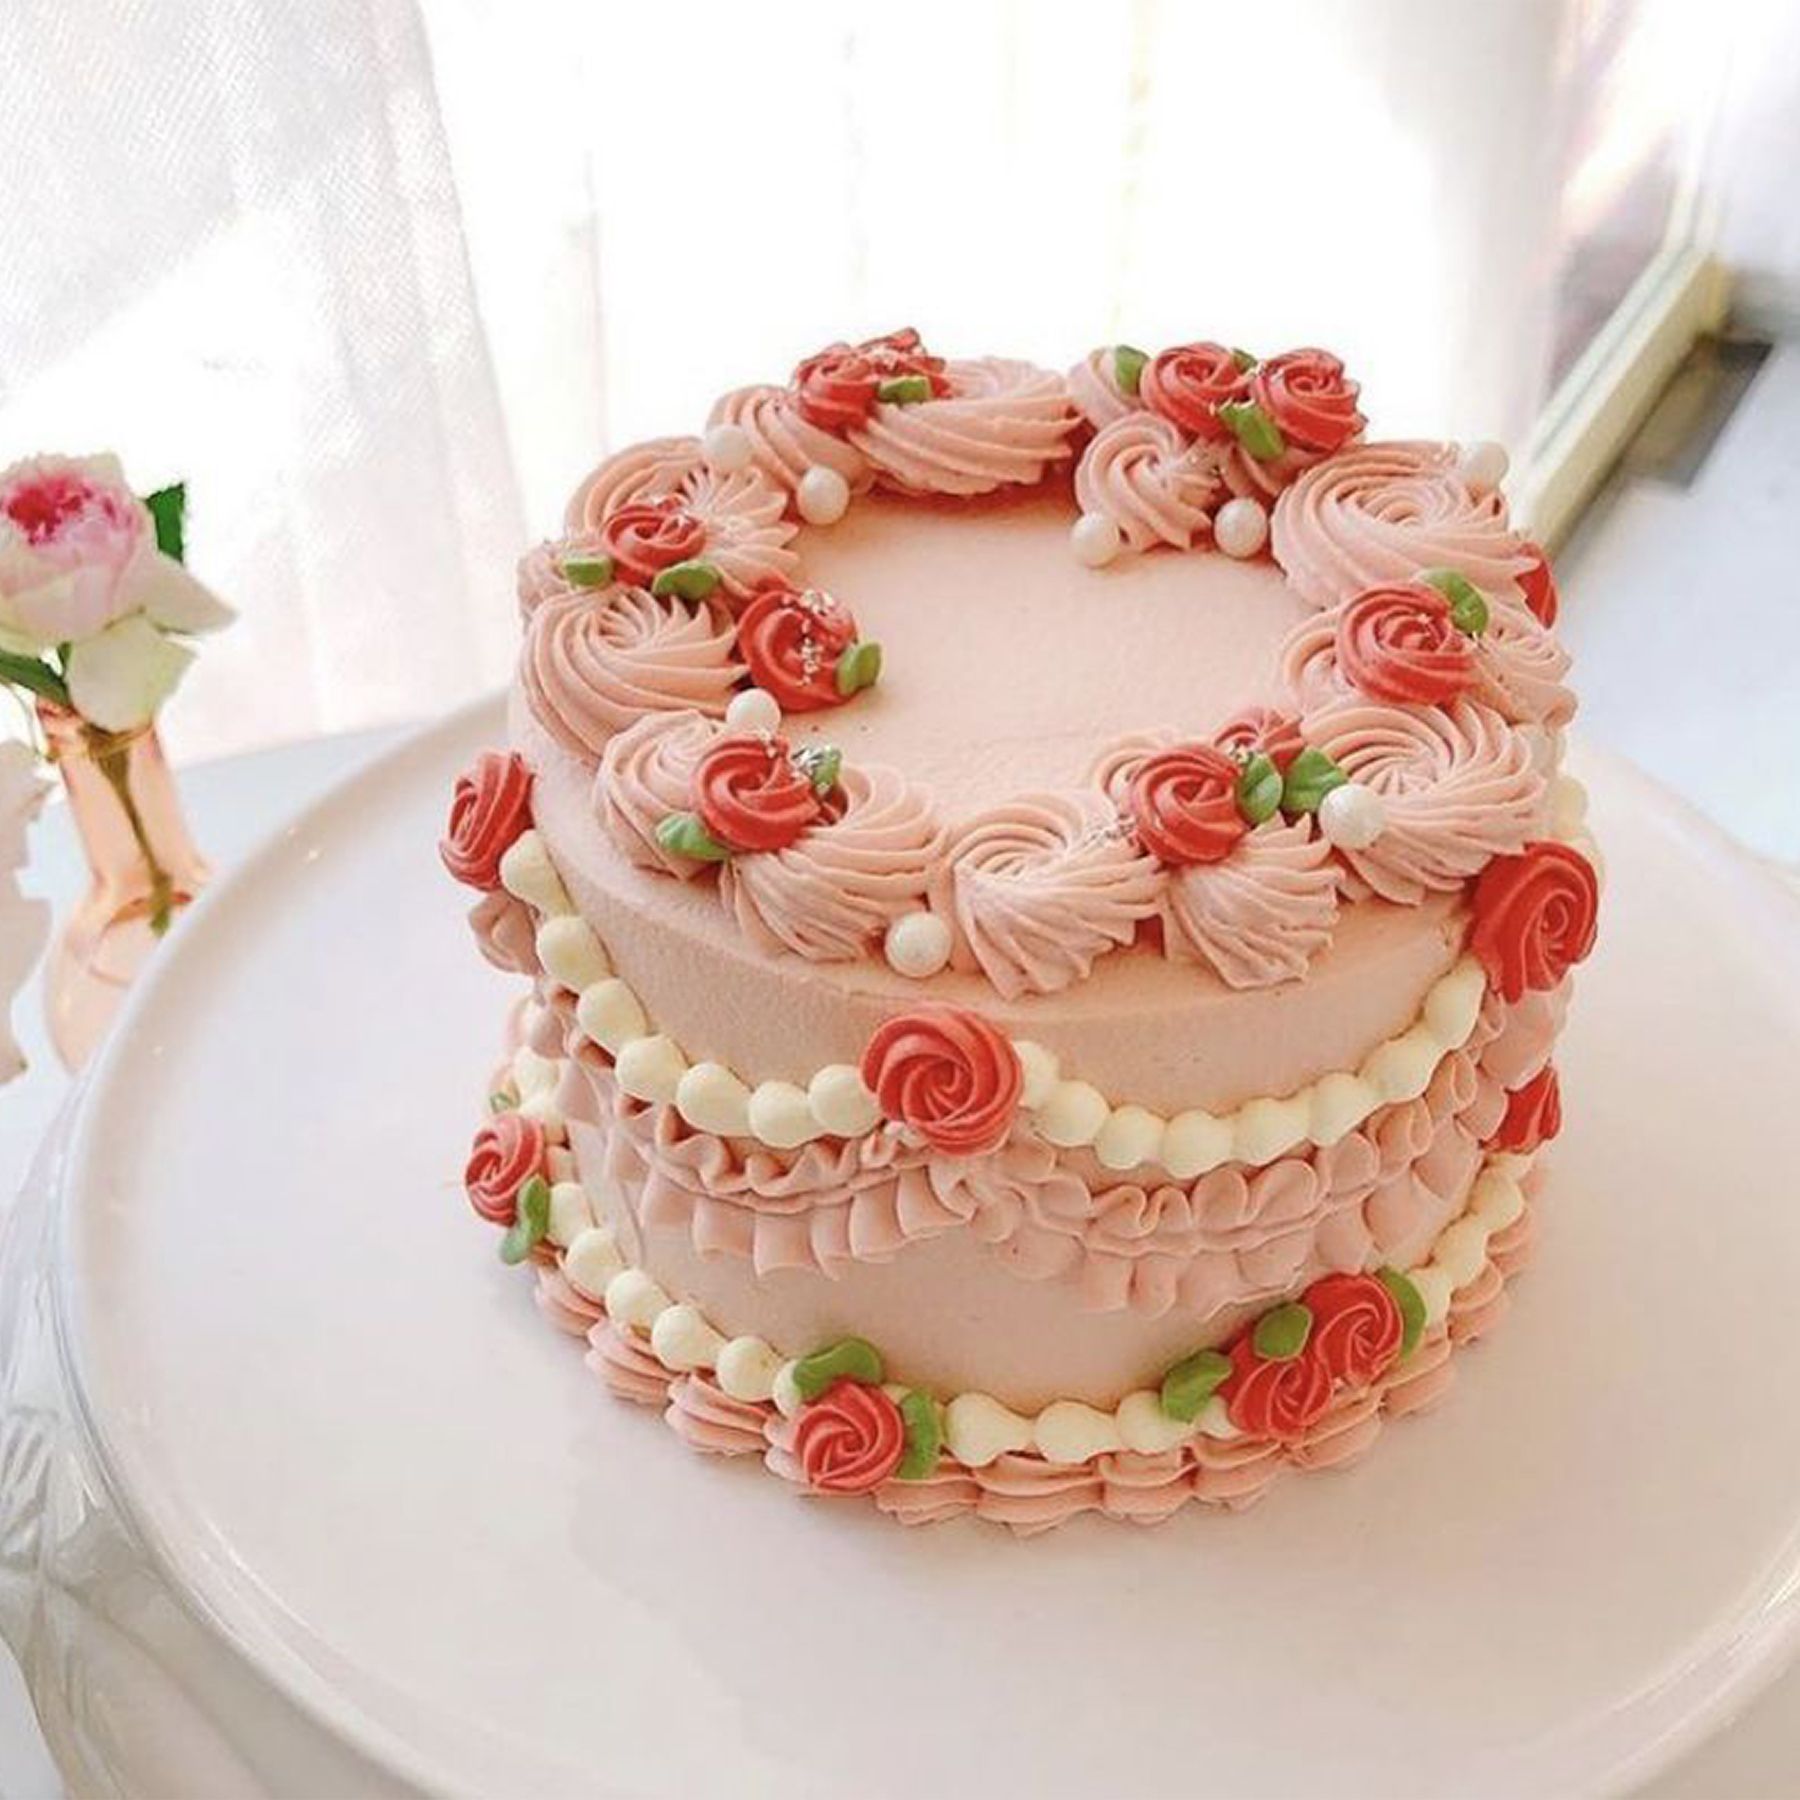 Bánh sinh nhật màu hồng cam chanh sả đẹp tặng người thân yêu 8012  Bánh sinh  nhật kỷ niệm